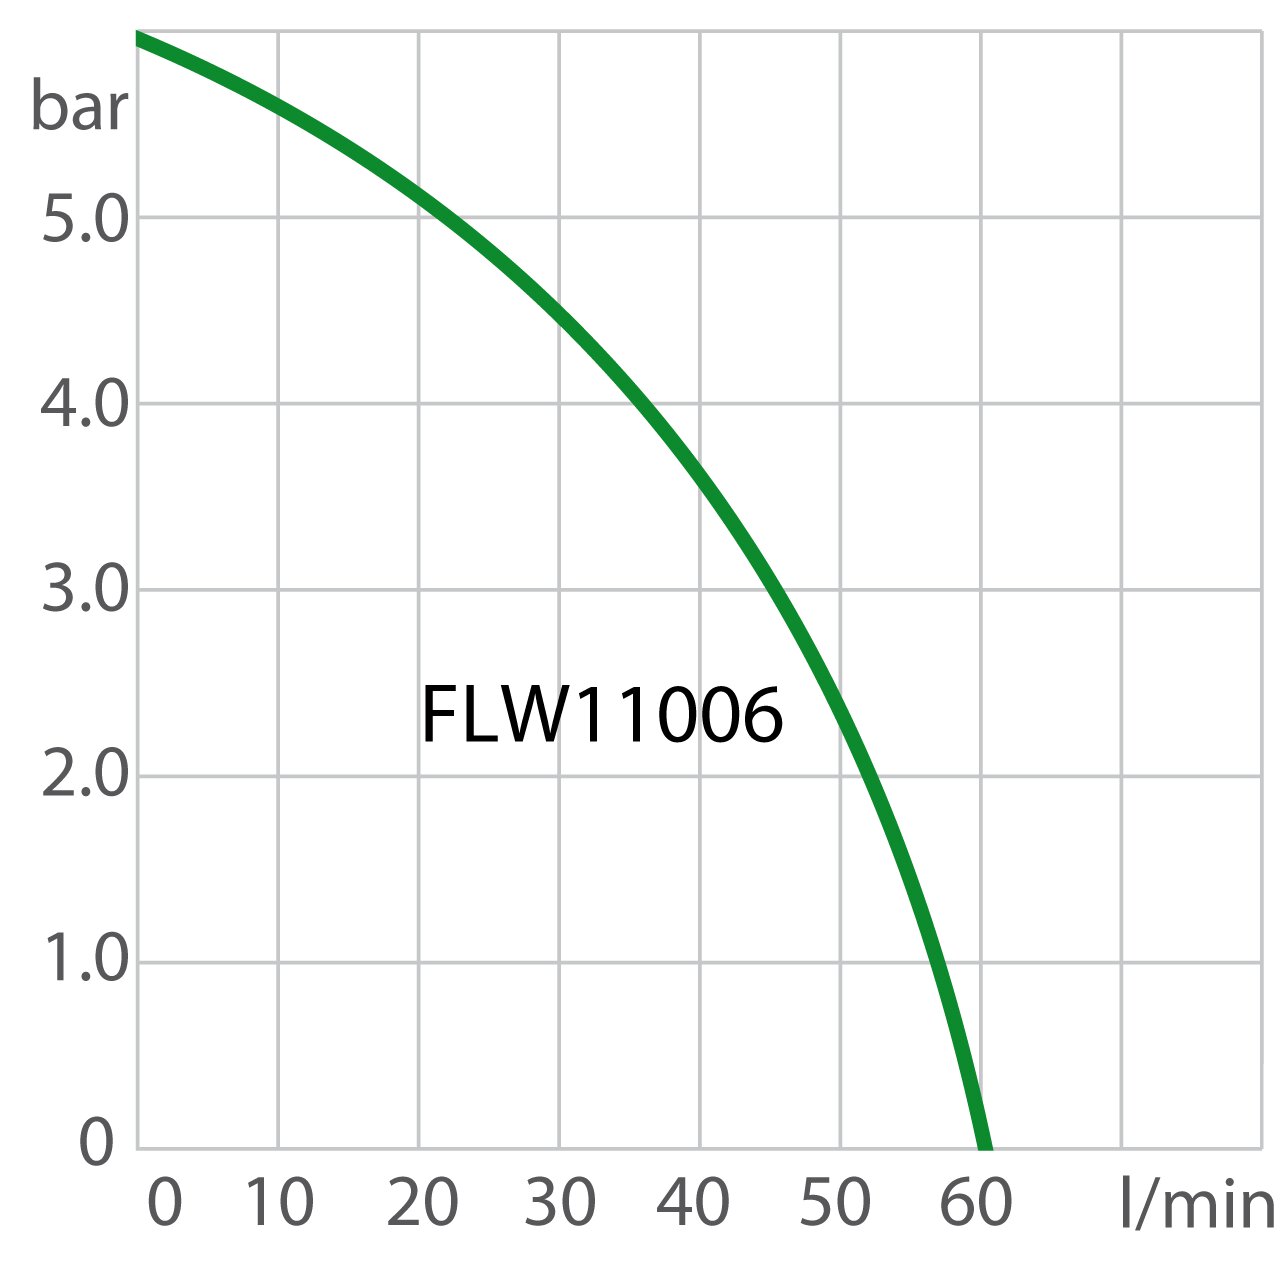 Pump capacity recirculating cooler FLW11006